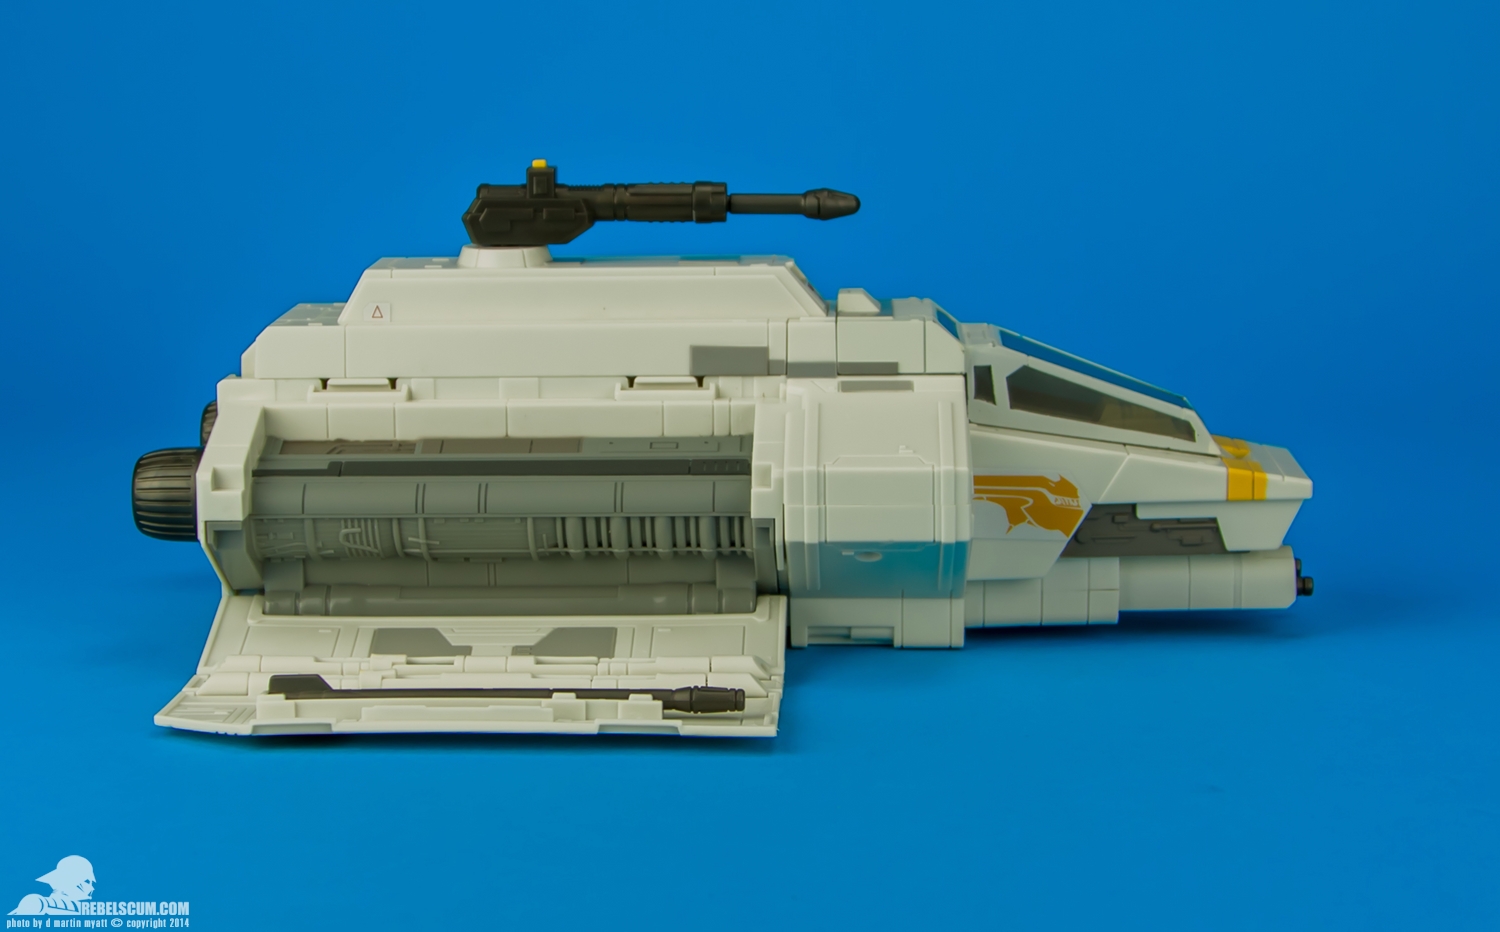 Rebels-Vehicles-series-1-The-Phantom-Attack-Shuttle-006.jpg